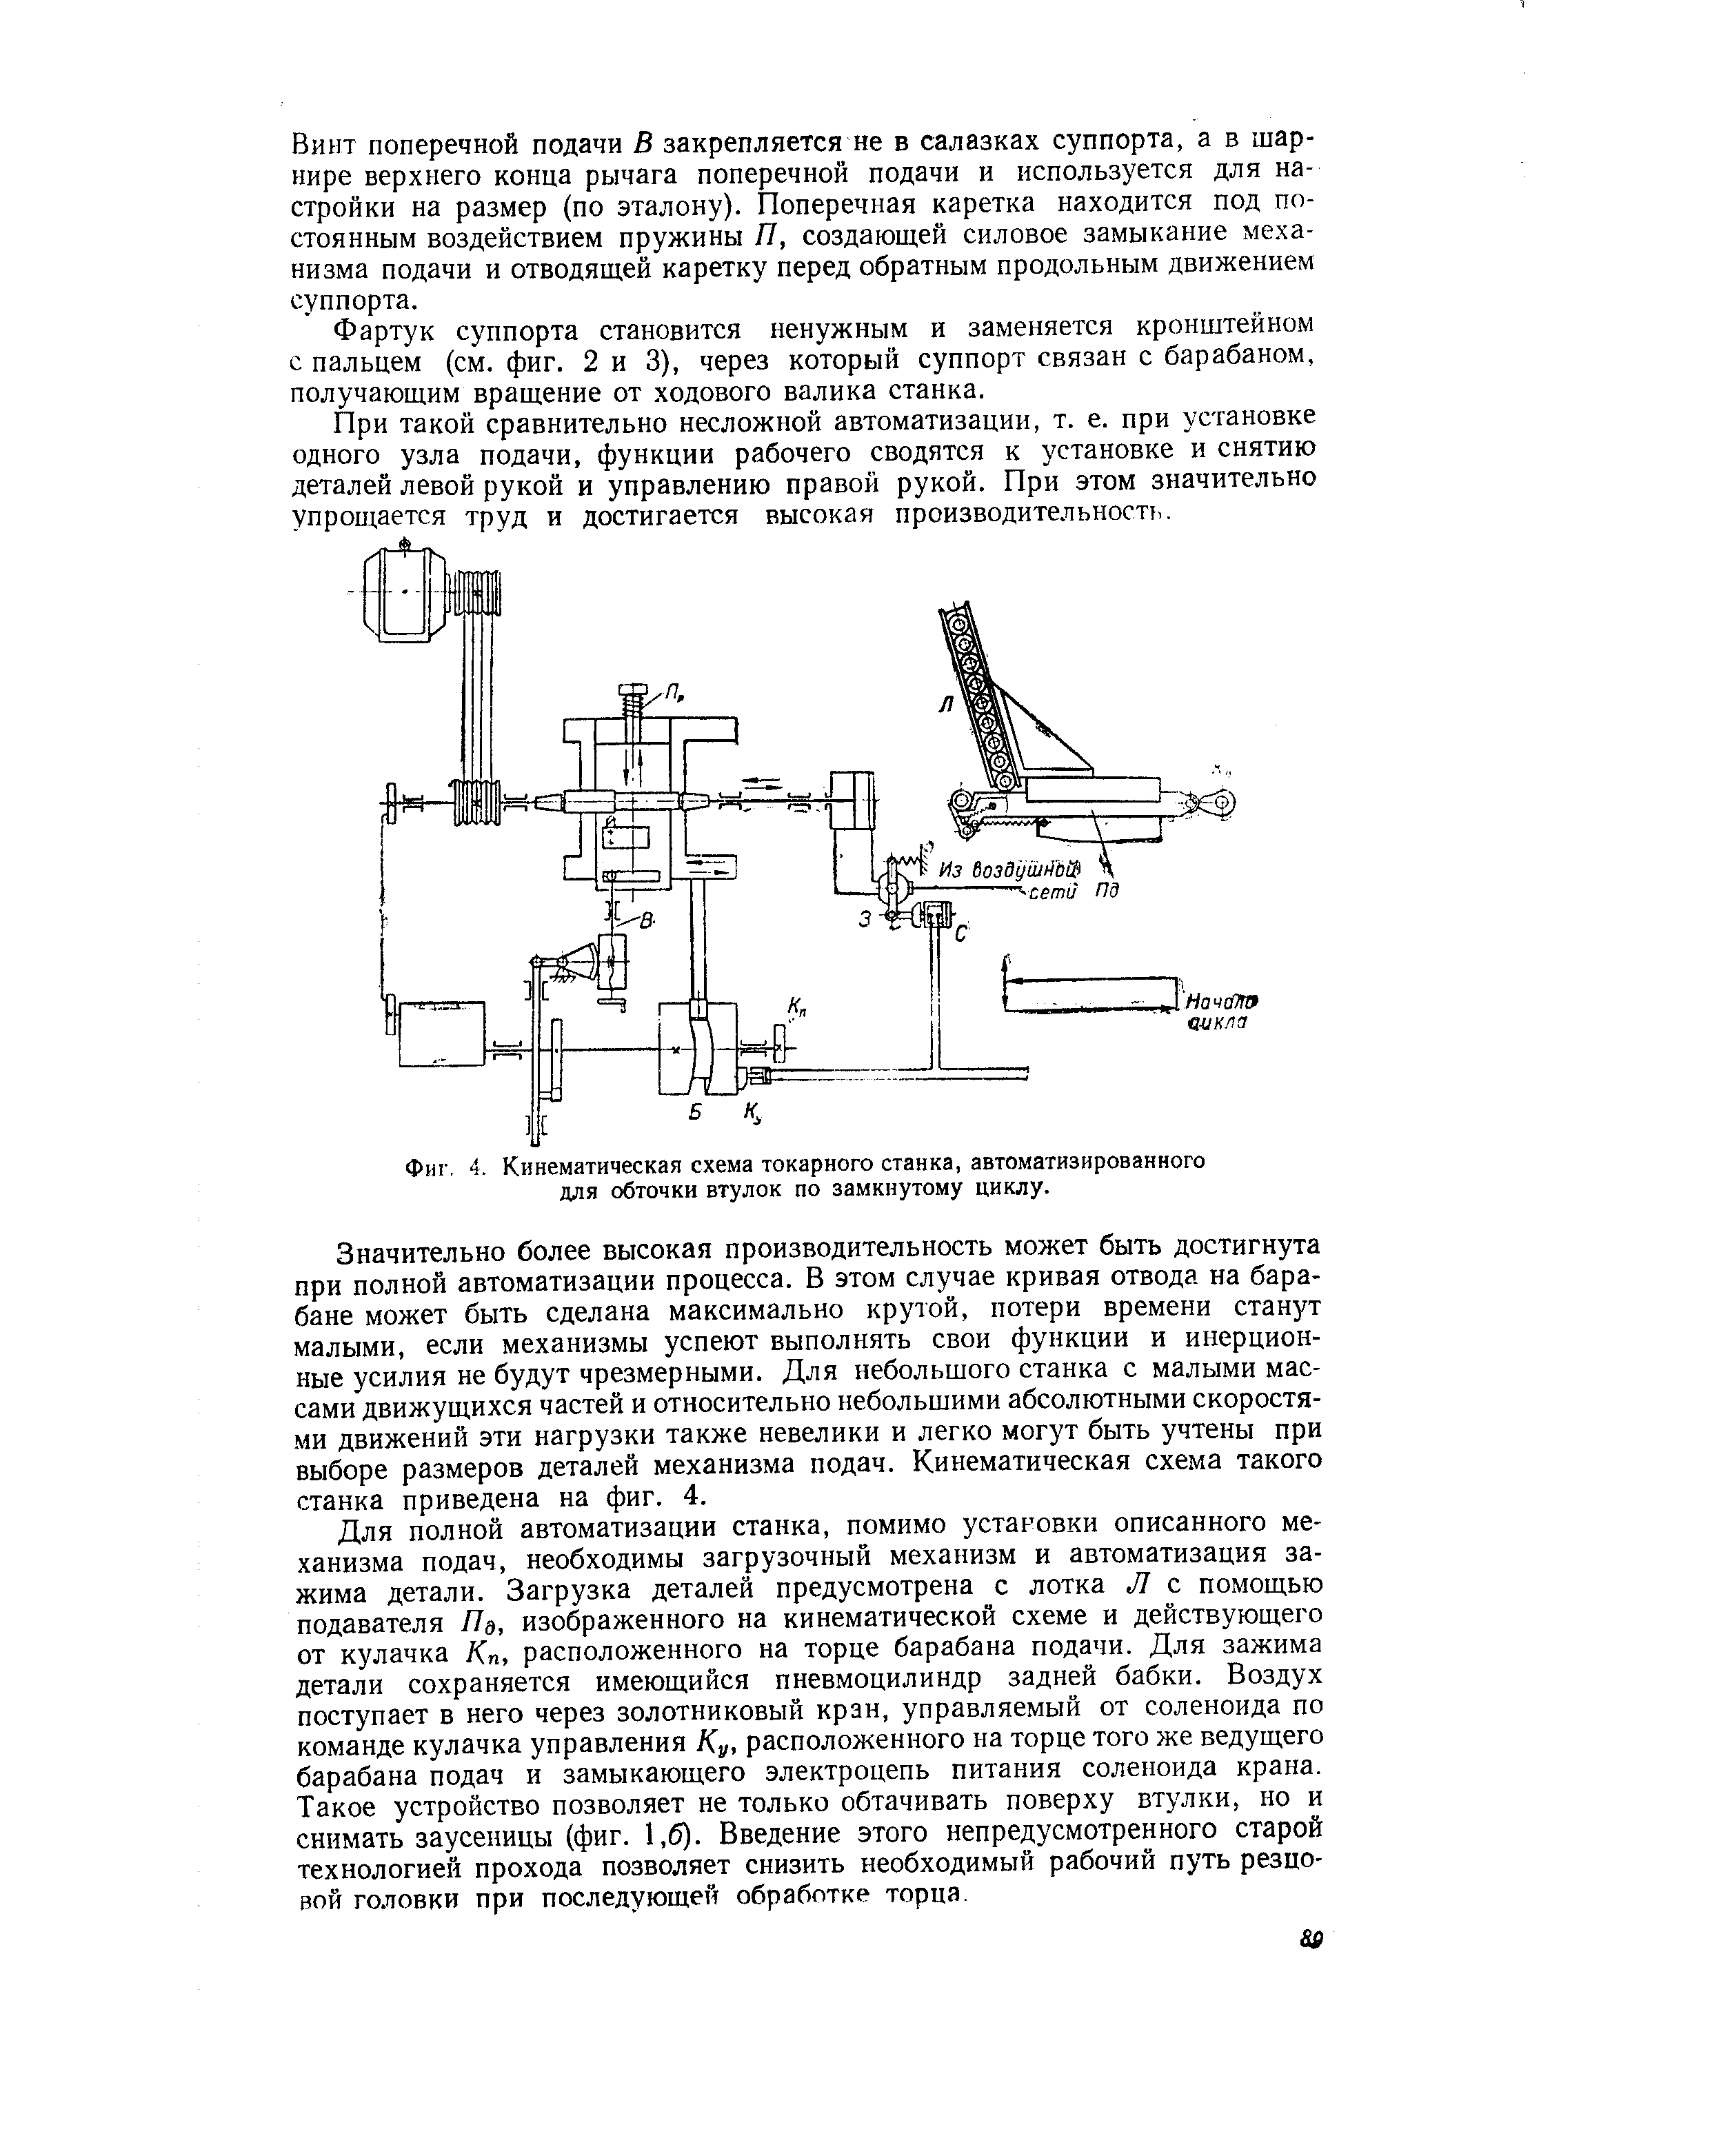 Фиг. 4. Кинематическая схема токарного станка, автоматизированного для обточки втулок по замкнутому циклу.
